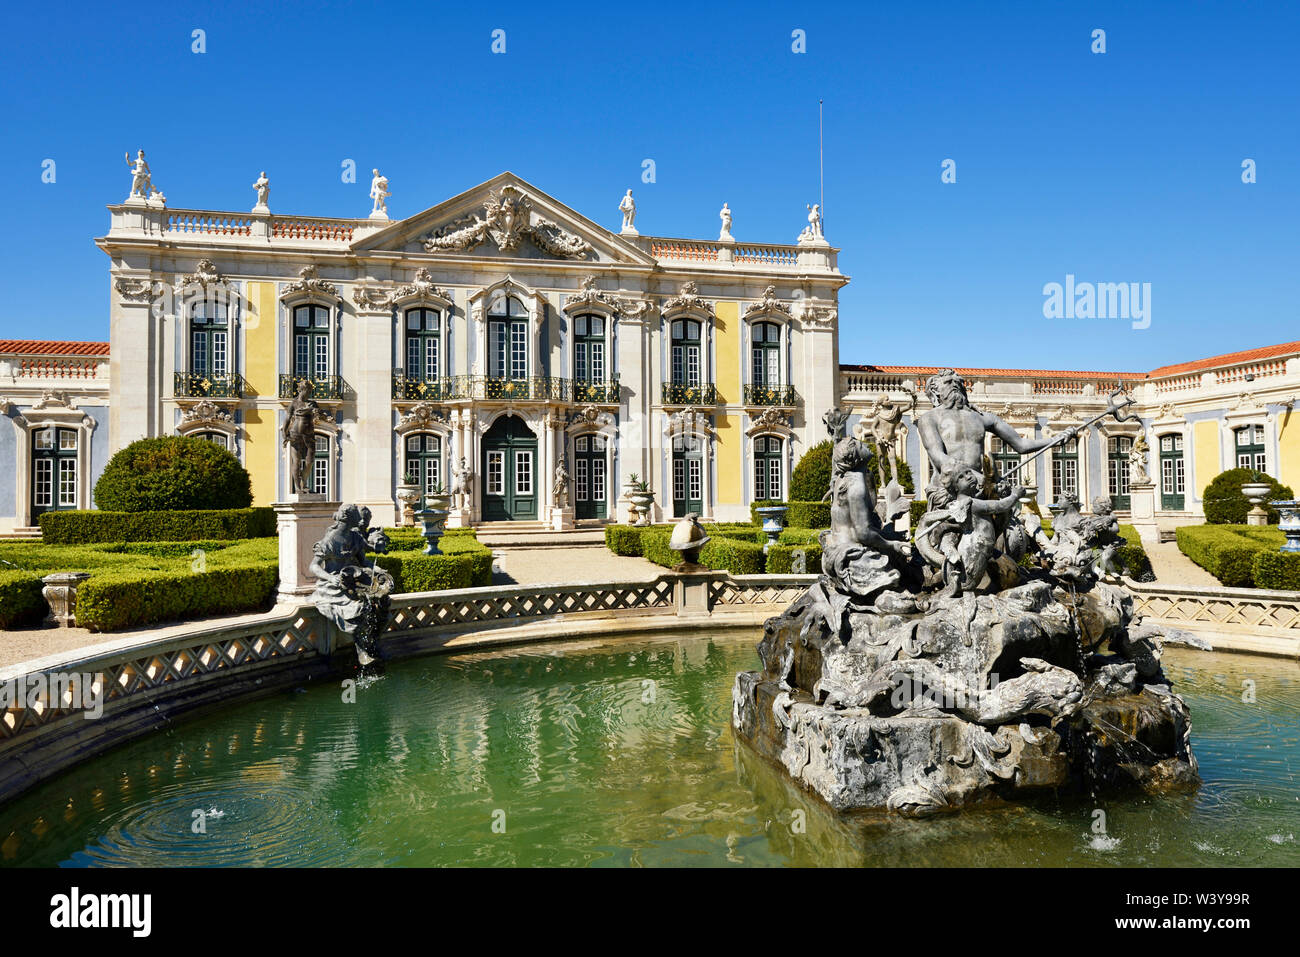 Il Queluz Palazzo Nazionale (Palacio Nacional de Queluz), risalente al XVIII secolo, è un riferimento del rococò e architettura neoclassica in Portogallo. Lisbona, Portogallo Foto Stock